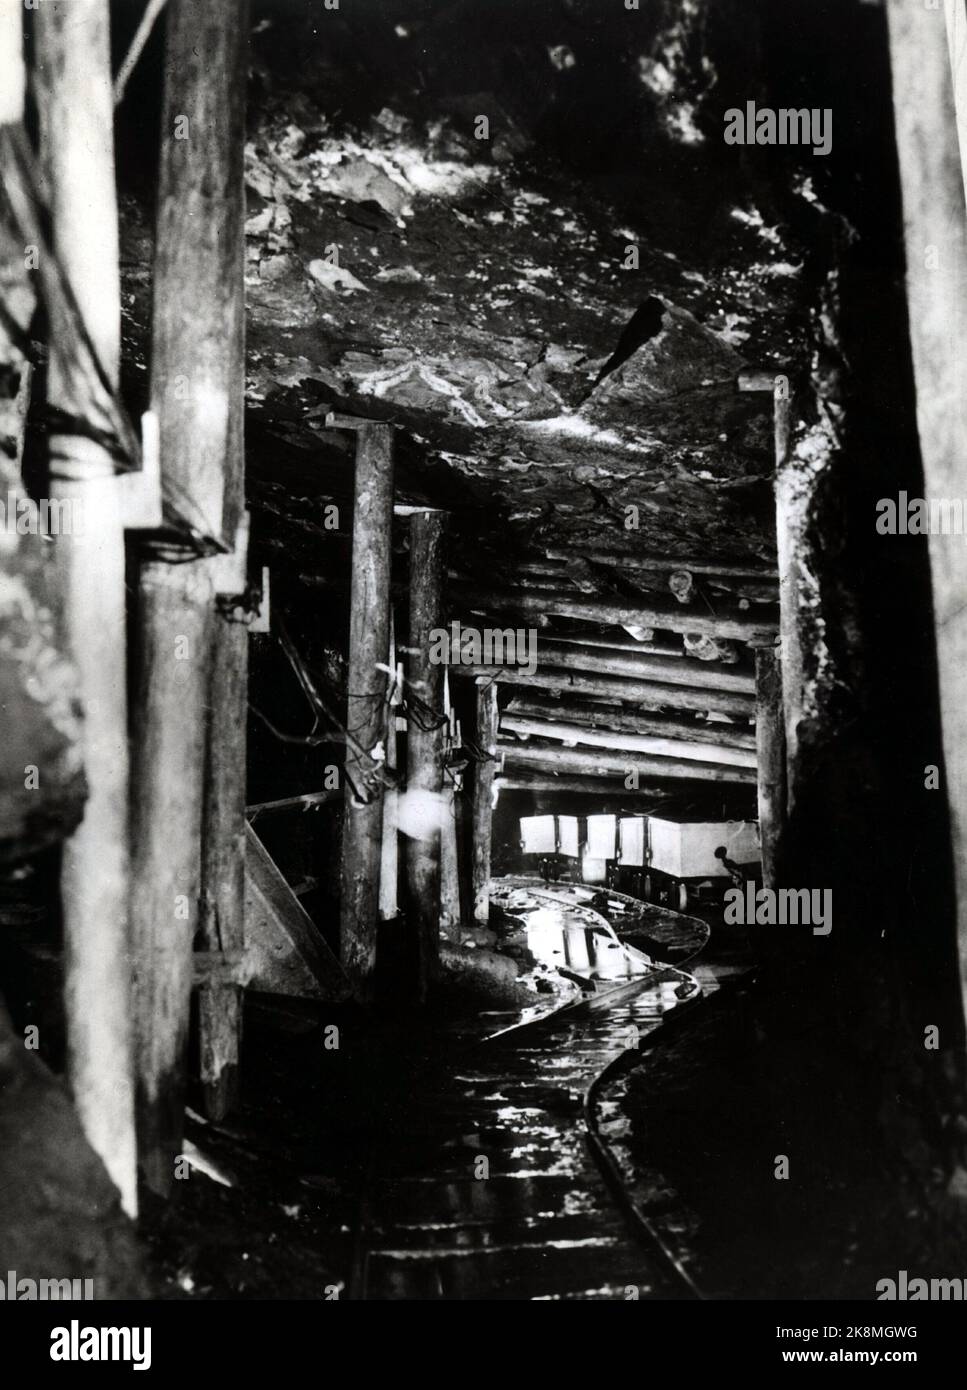 Ny Ålesund 1959. Foto fra 'King Bay - anlegget' i Ny Ålesund der den fjerde alvorlige eksplosjonsulykke i 'King Bay-gruvene' på Svalbard skjedde 5.november 1962. 21 mennesker omkom. (De tre foregående eksplosjonsulykker i Kings Bay var i 1948, 1952 og 1953 med henholdsvis 15, ni  og 16 omkomne). Bildet viser inngangen til Kings Bay-gruvene. Det ble påny avslørt store mangler og misligheter, og saken endte med mistillit i Stortinget og industriminister Kjell Holler måtte gå. Stortinget besluttet så avvikling av 'King Bay' 23.aug. 1963, og samtidig  måtte regjeringen Gerhardsen gå av. De borgerl Stock Photo